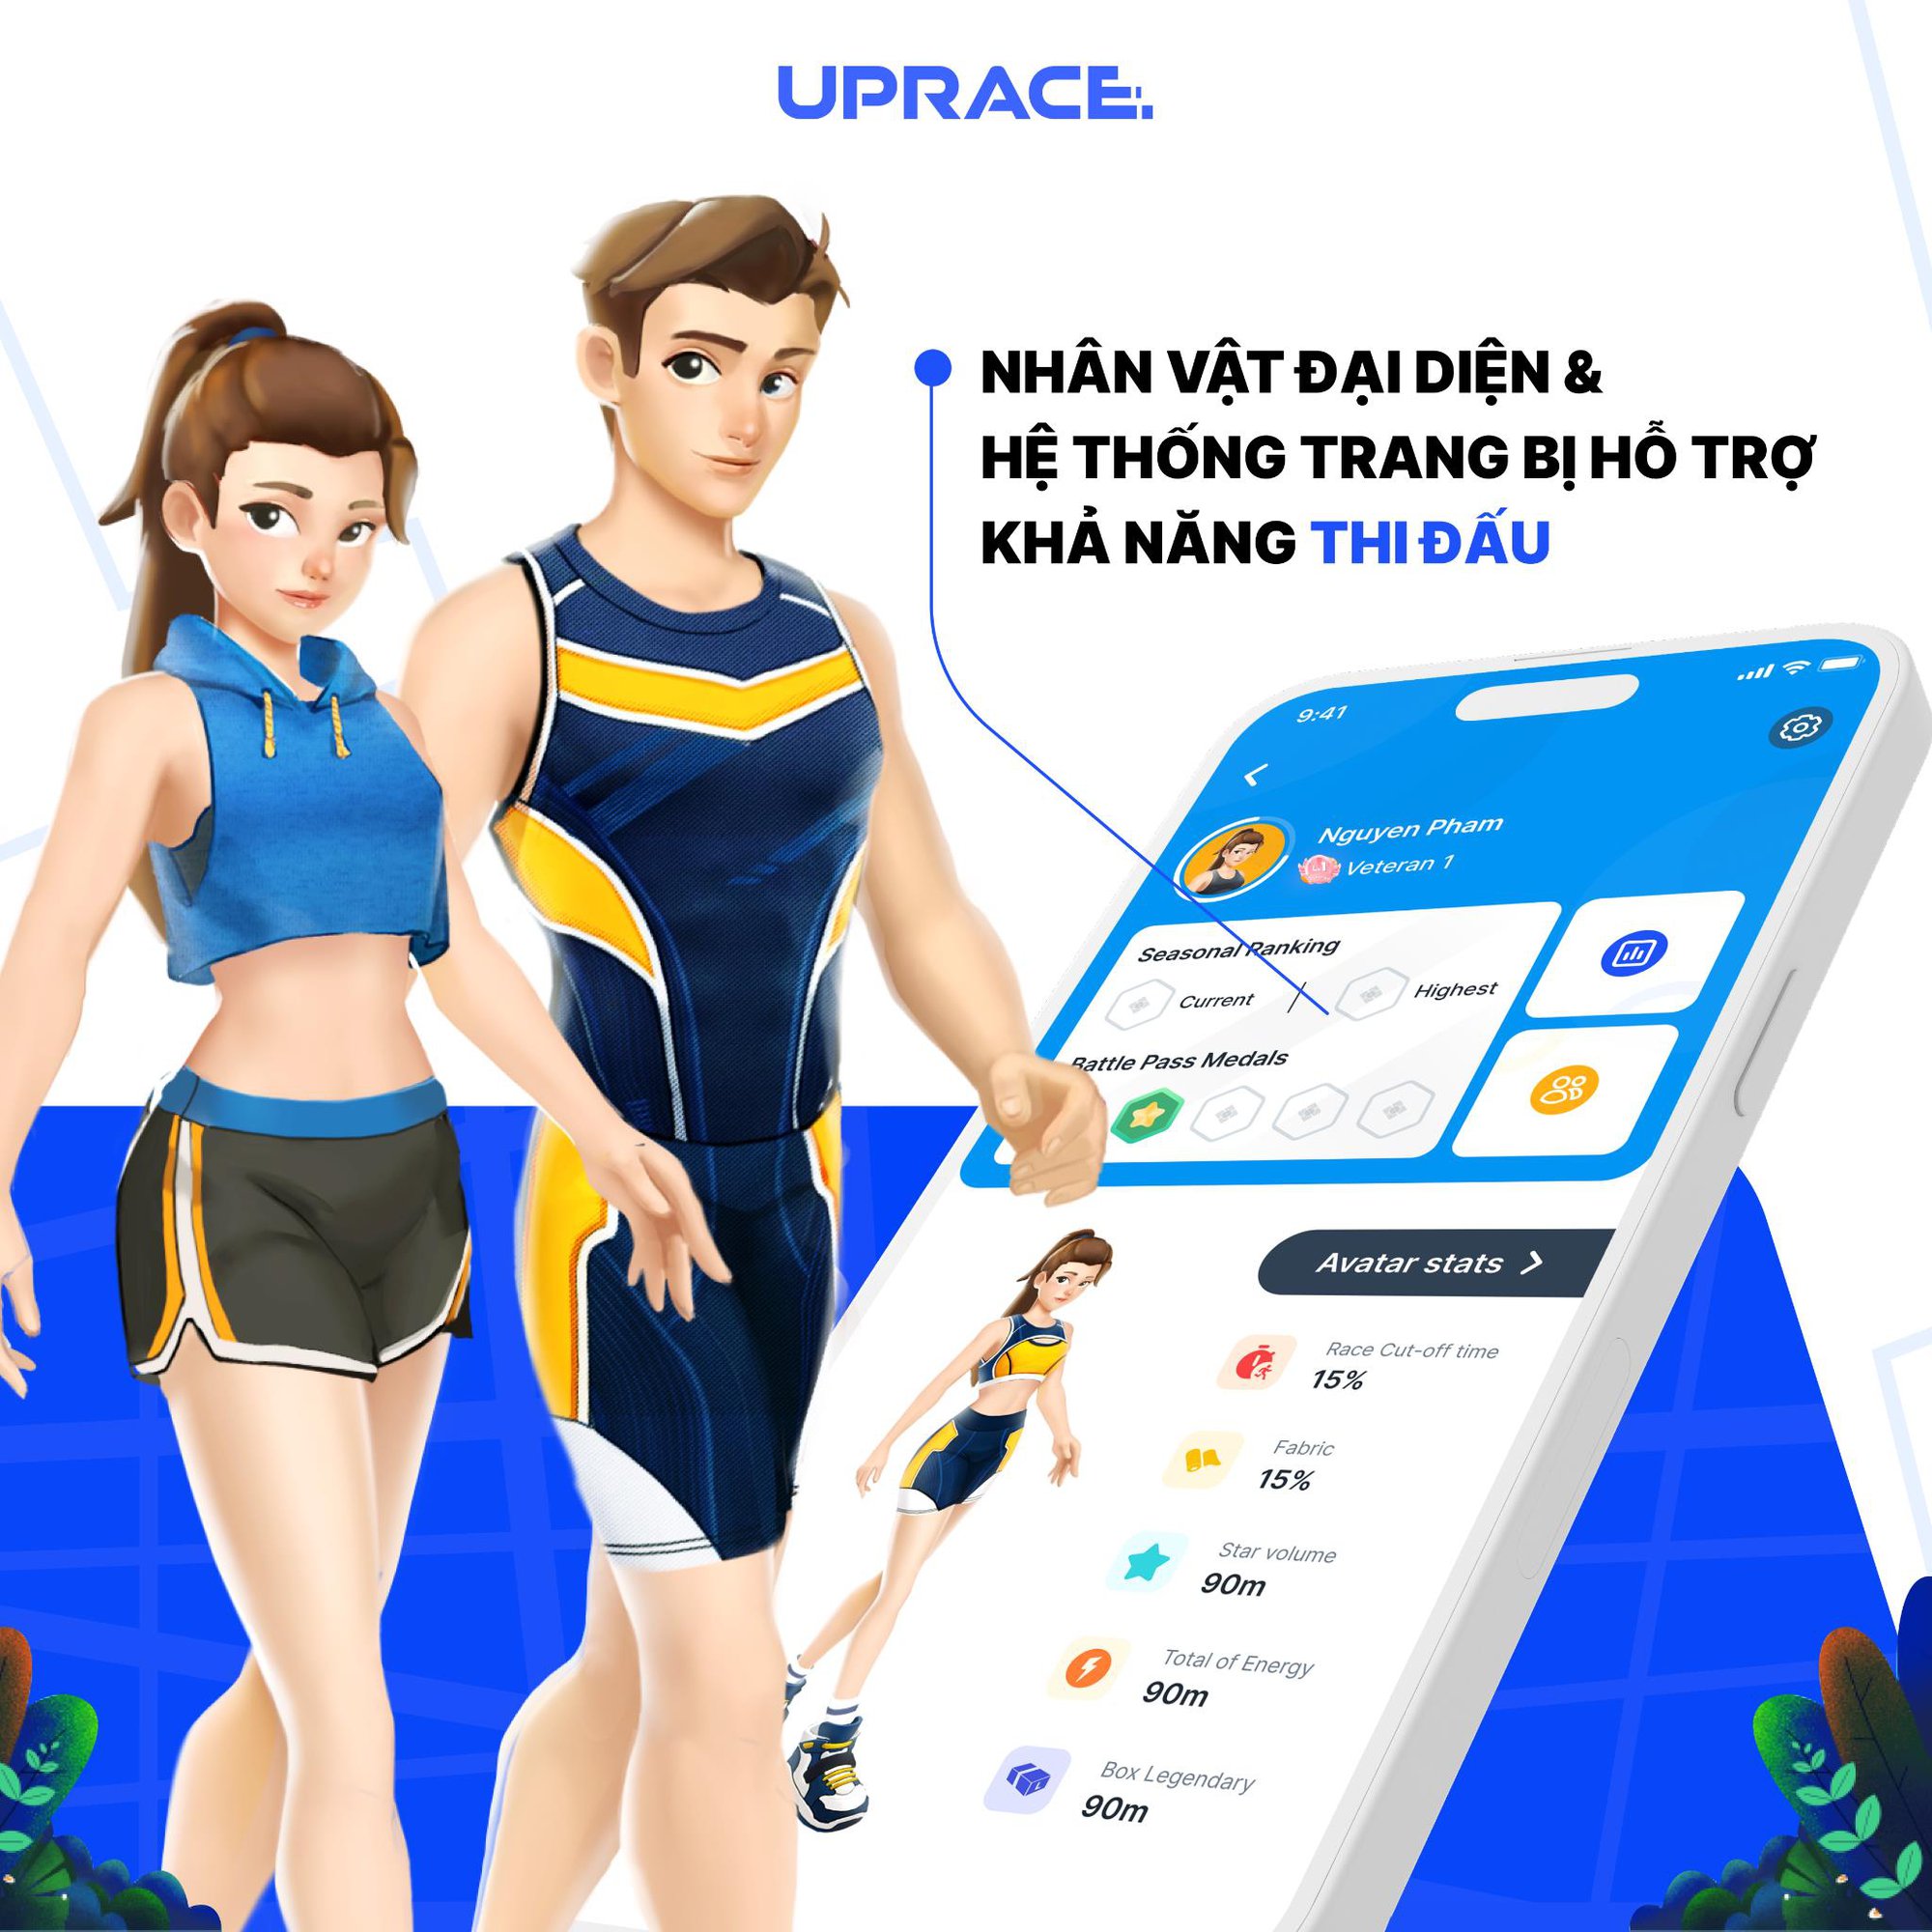 Giải mã lý do ứng dụng chạy bộ thuần Việt UPRACE được lòng cộng đồng runner trong nước - Ảnh 3.